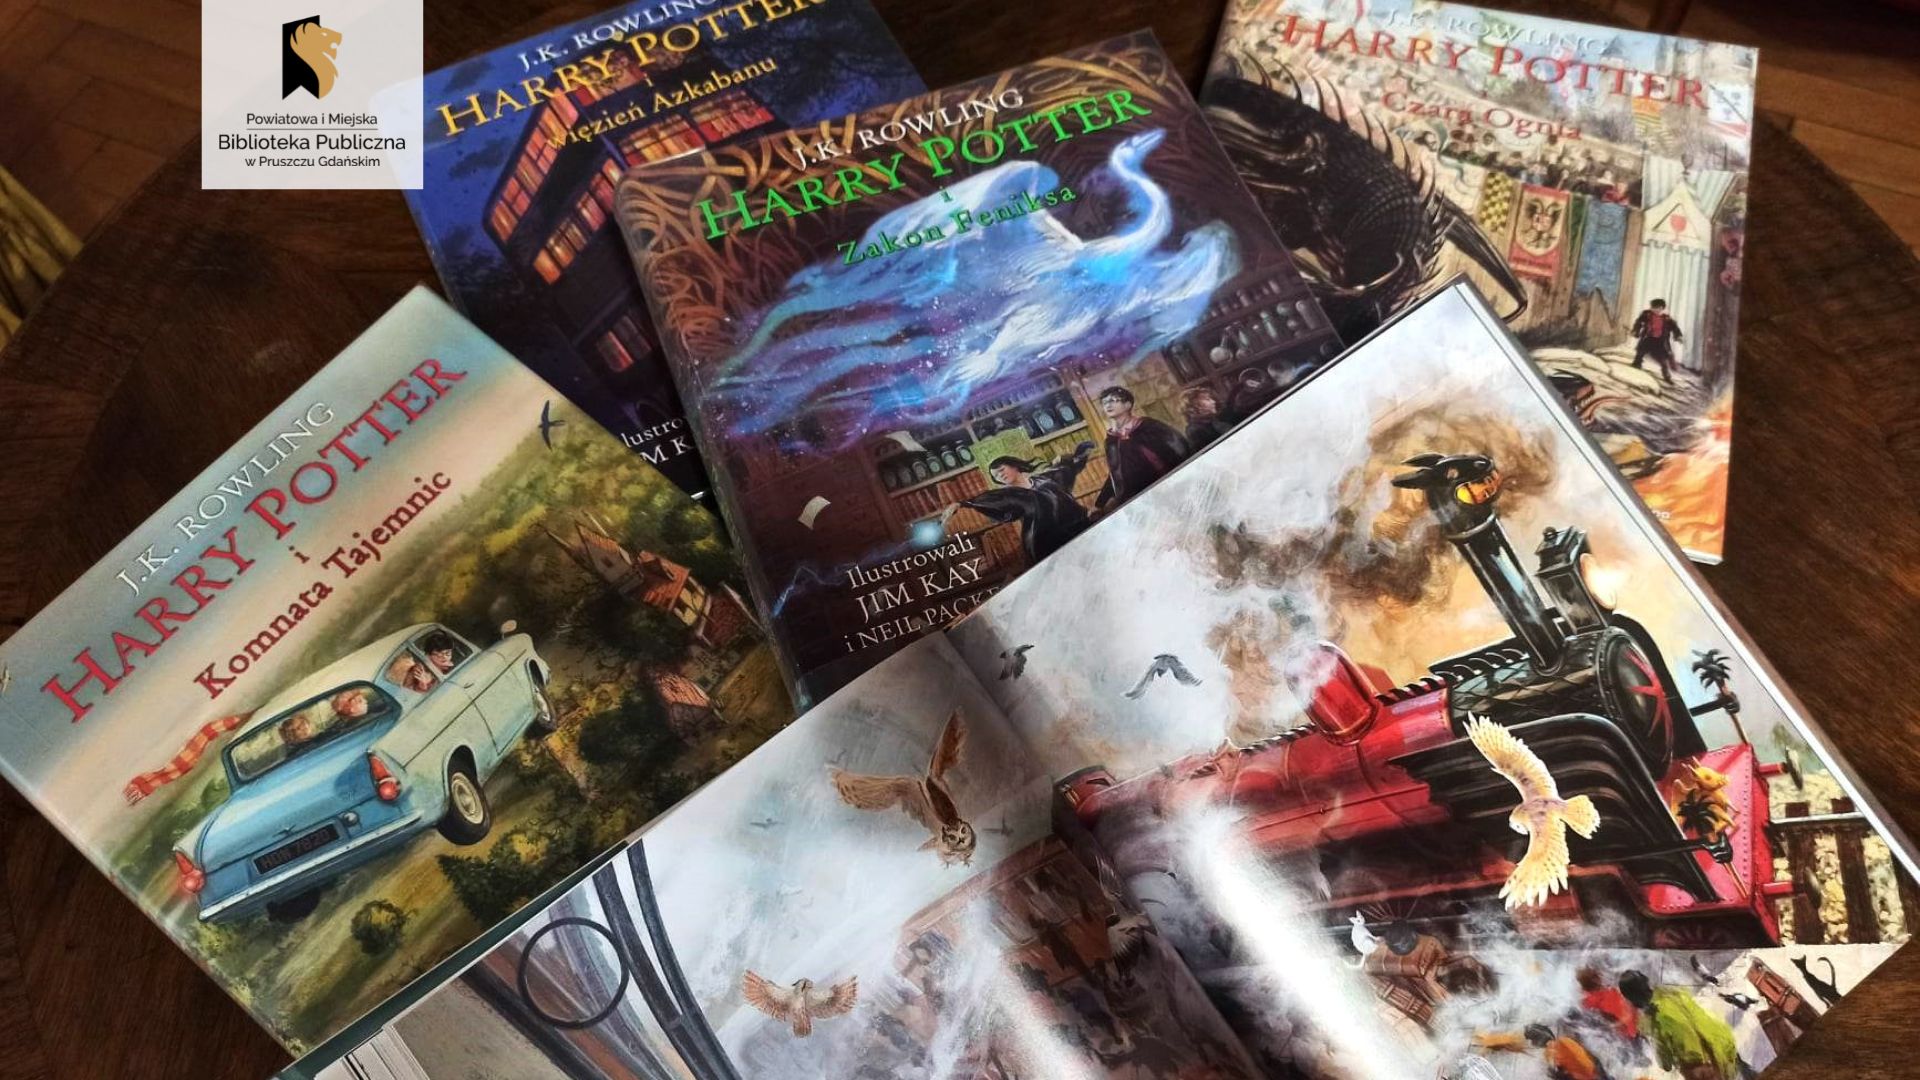 Na stole leży 5 książek – różne części z serii Harry Potter. Jedna z książek jest otwarta na ilustracji pociągu.